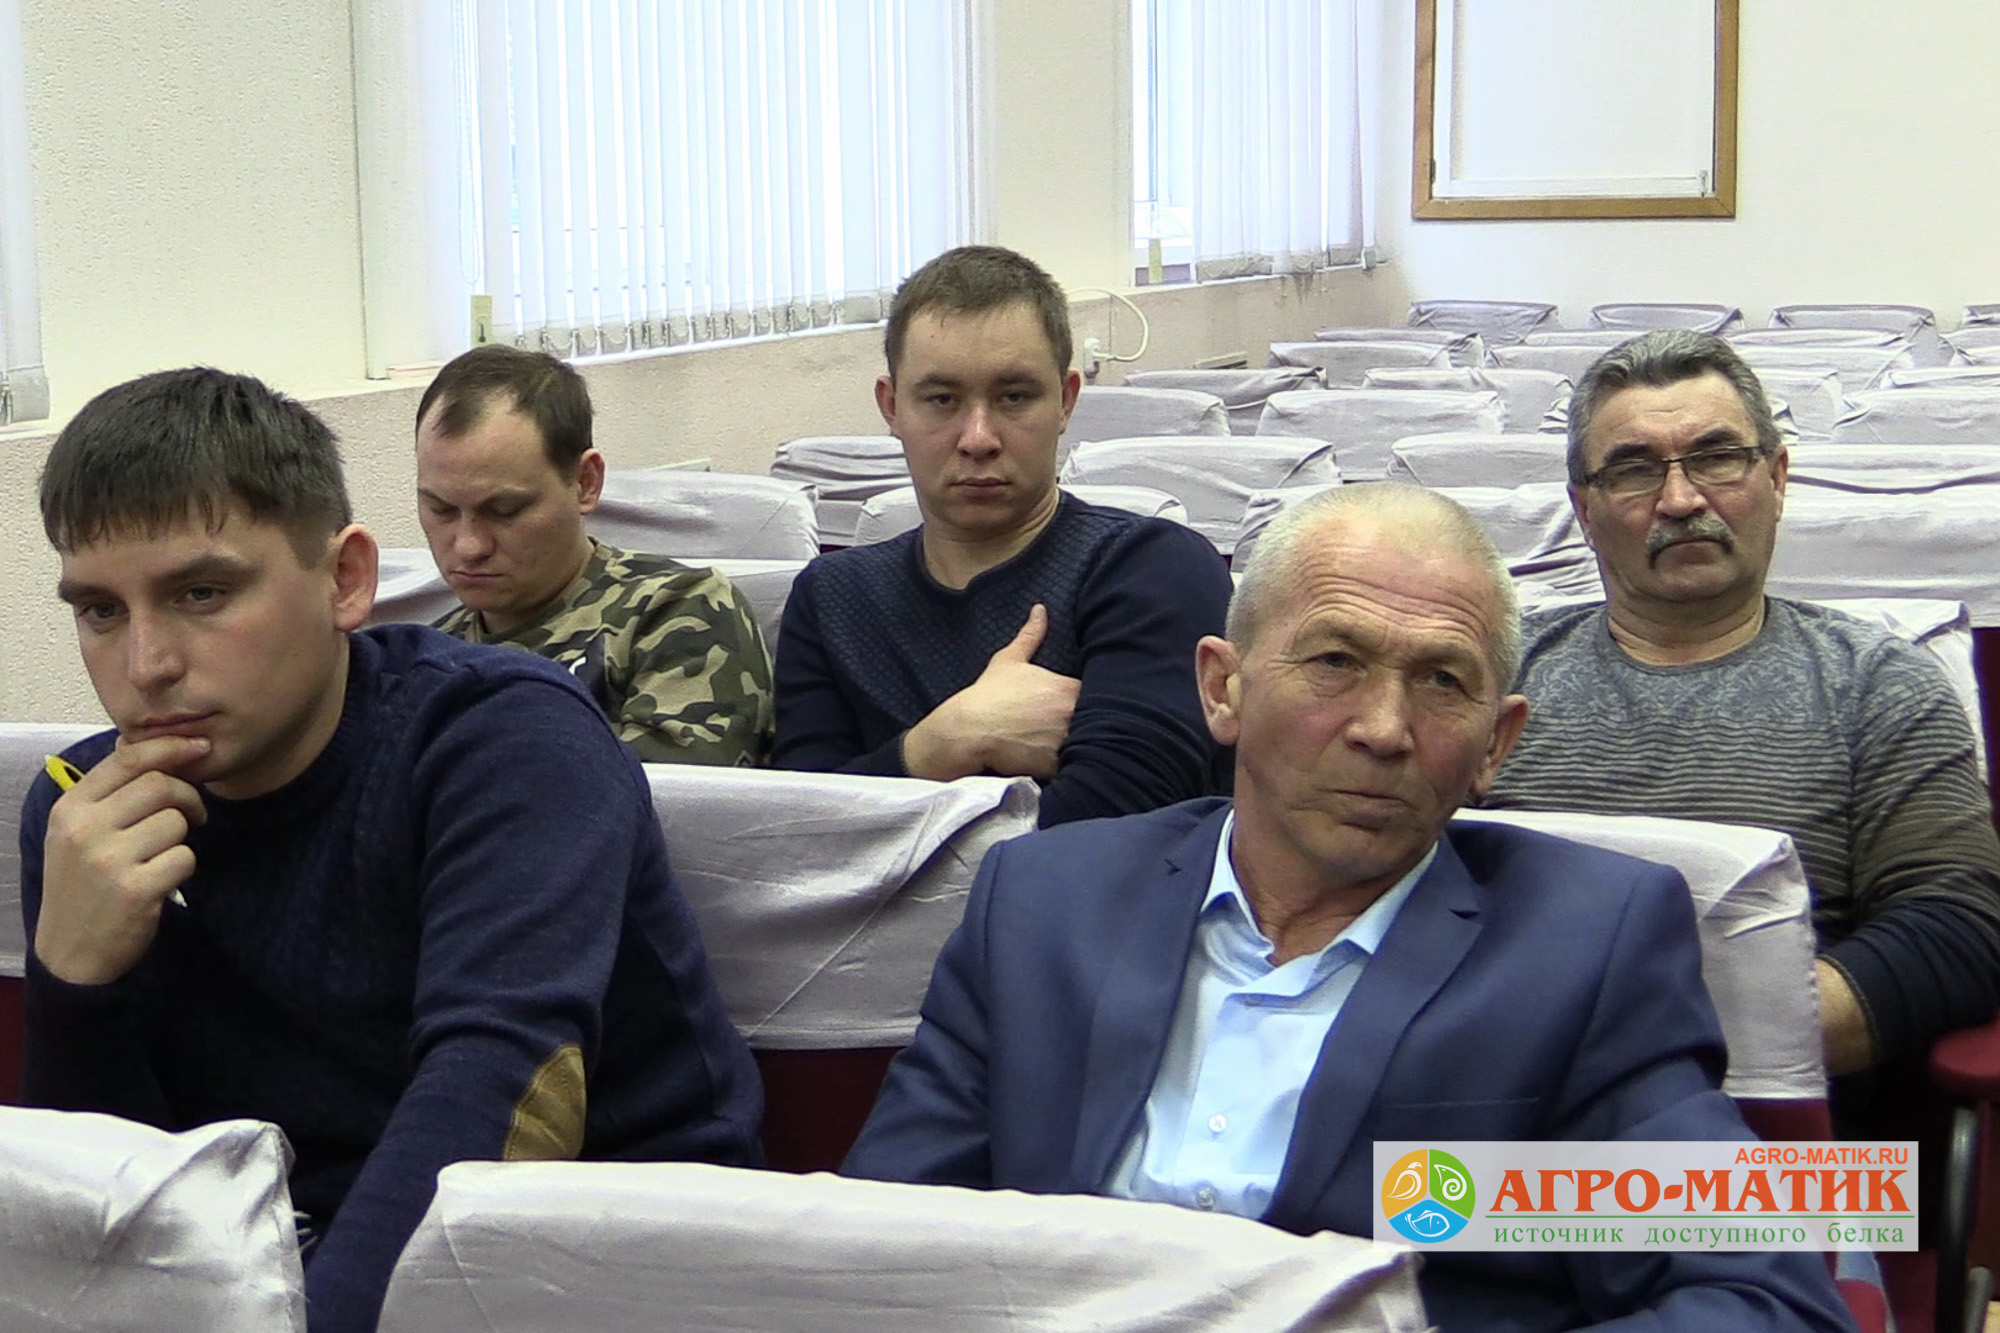 «Агро-Матик» провел в Казани семинар для производителей молока / Агро-Матик #9